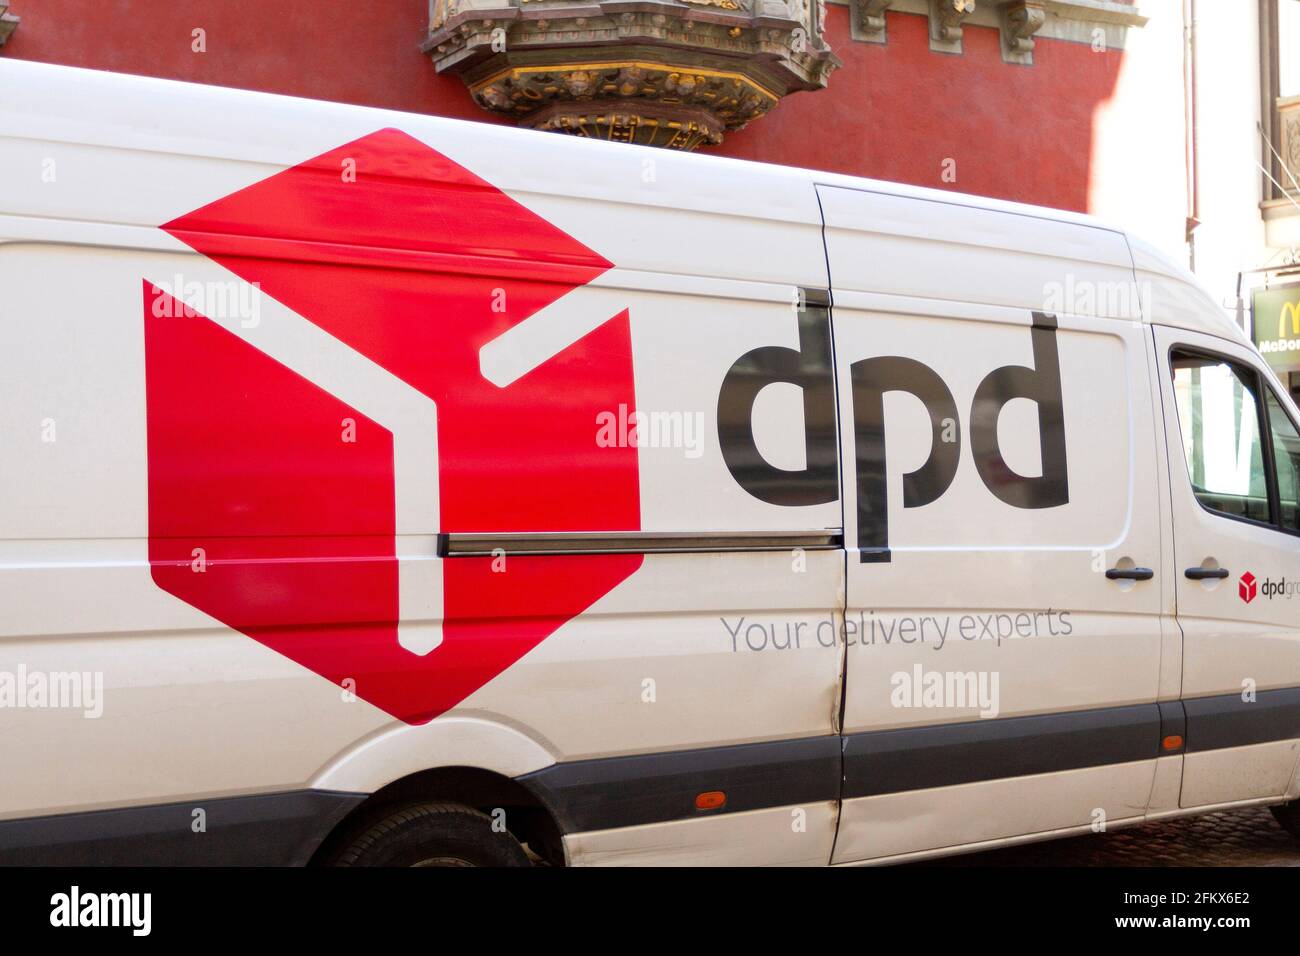 DPD, Deutscher Paketdienst Stockfotografie - Alamy